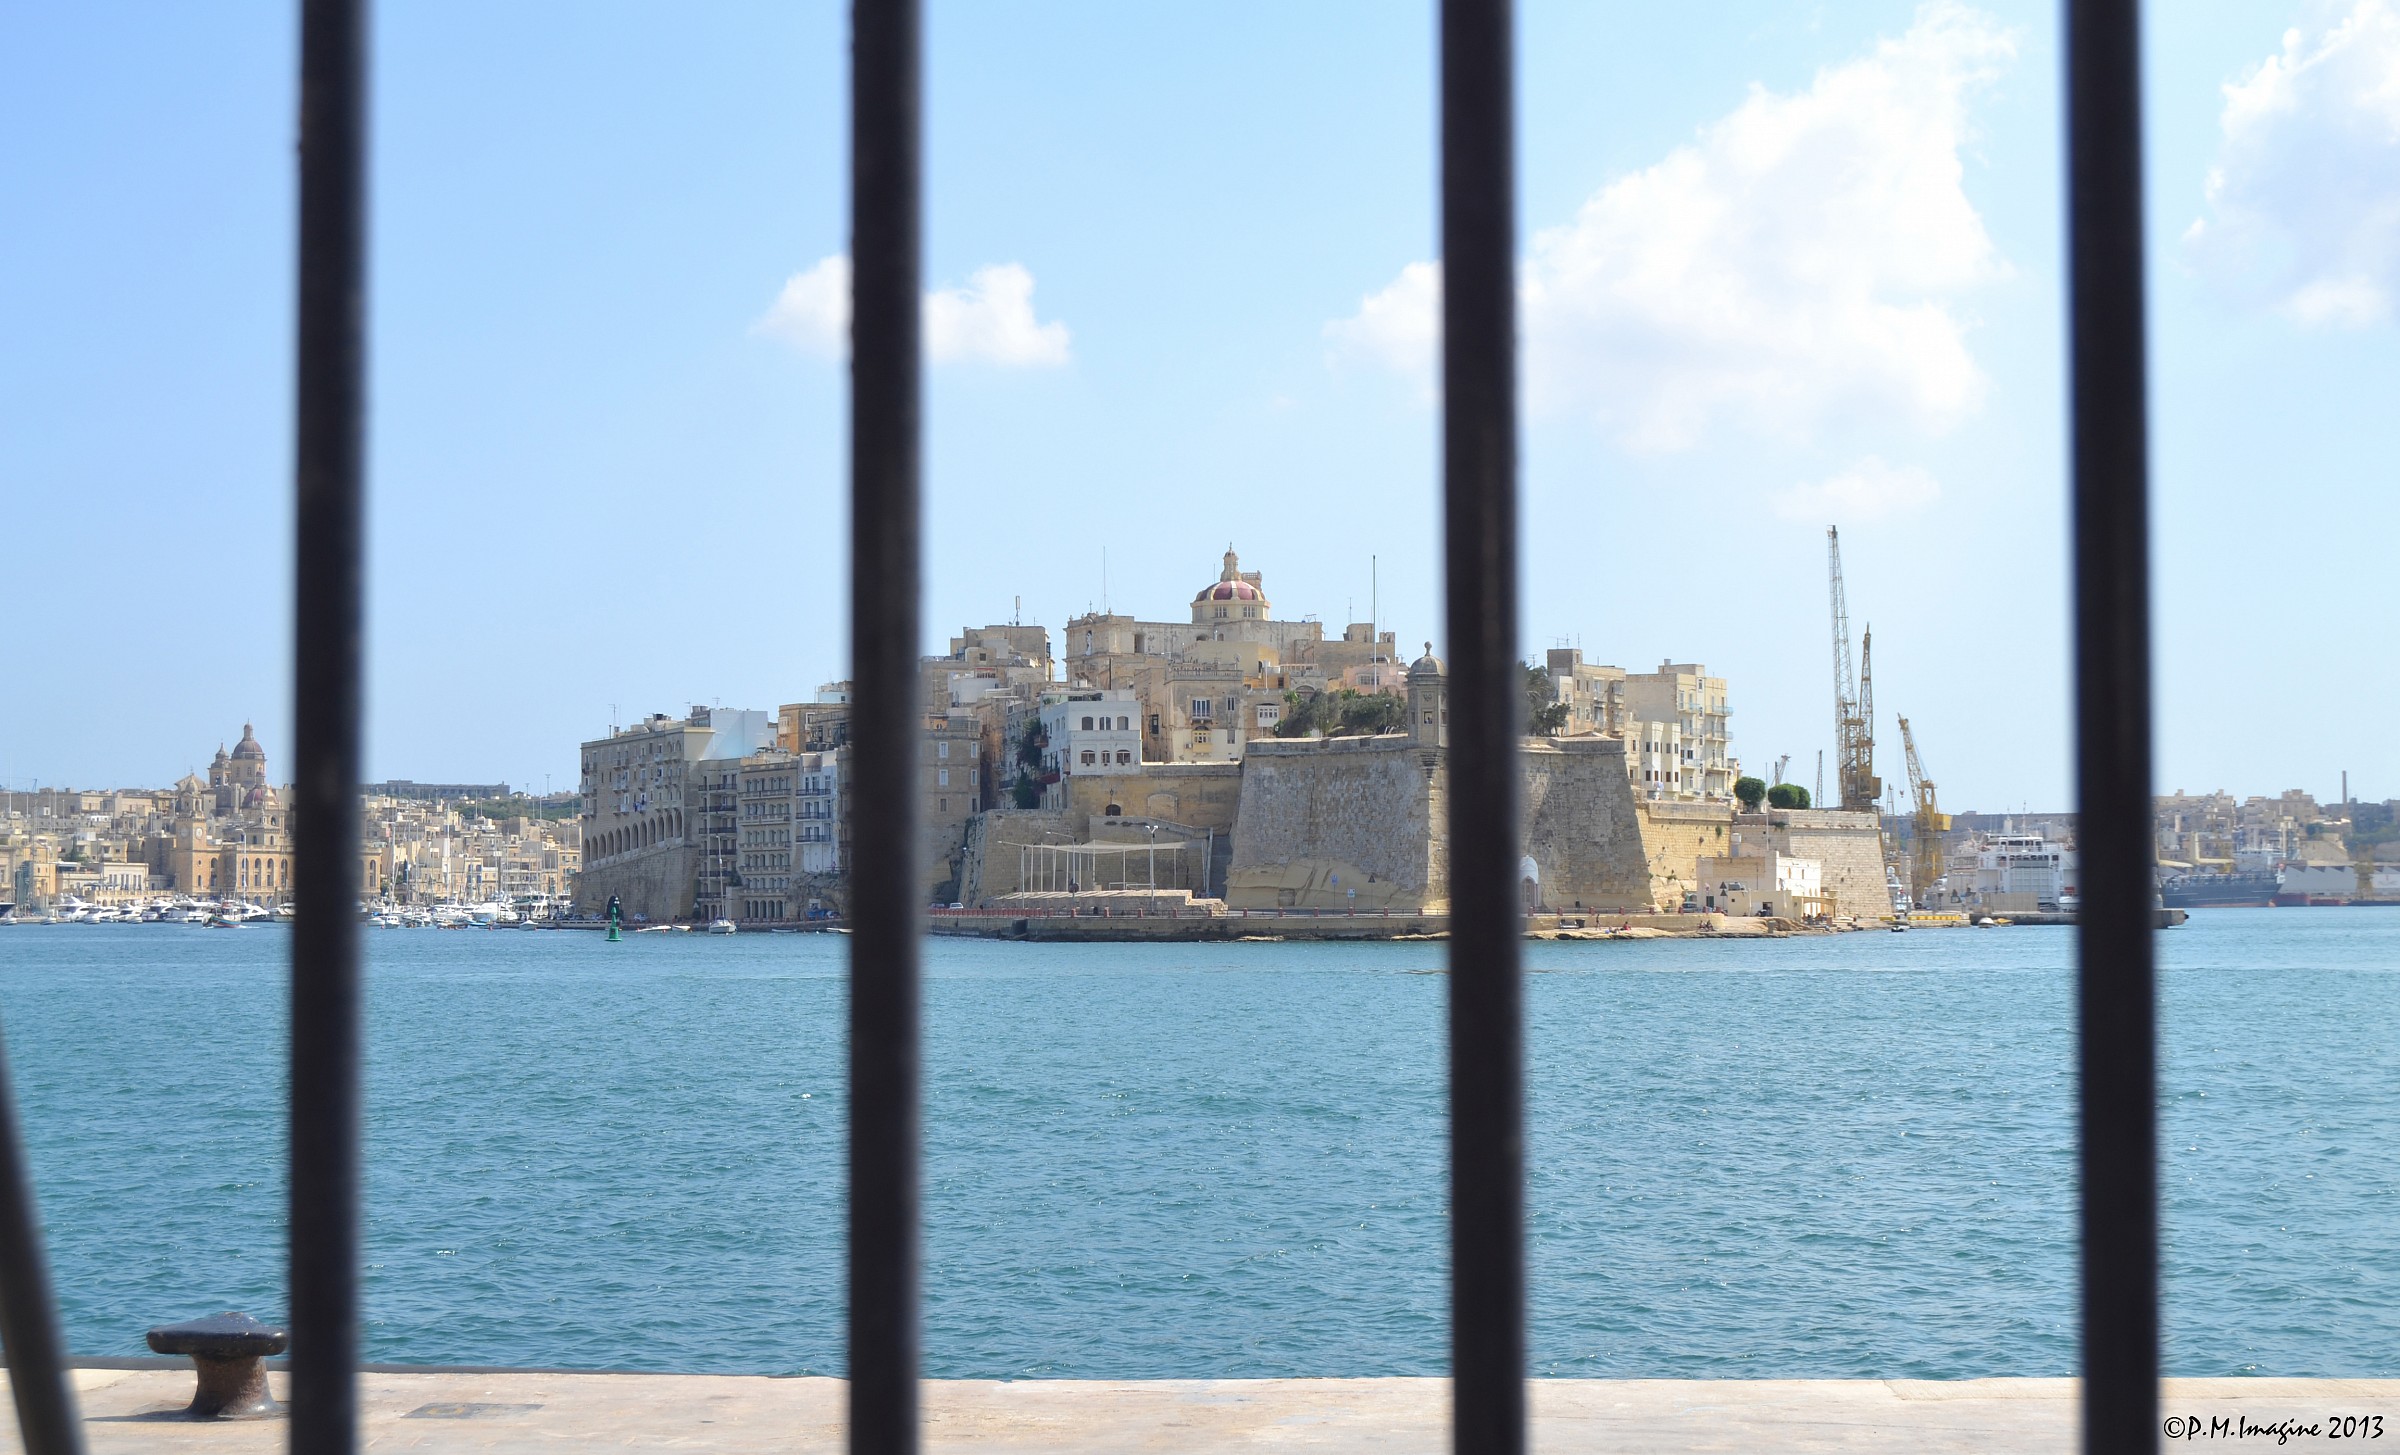 Malta behind bars...